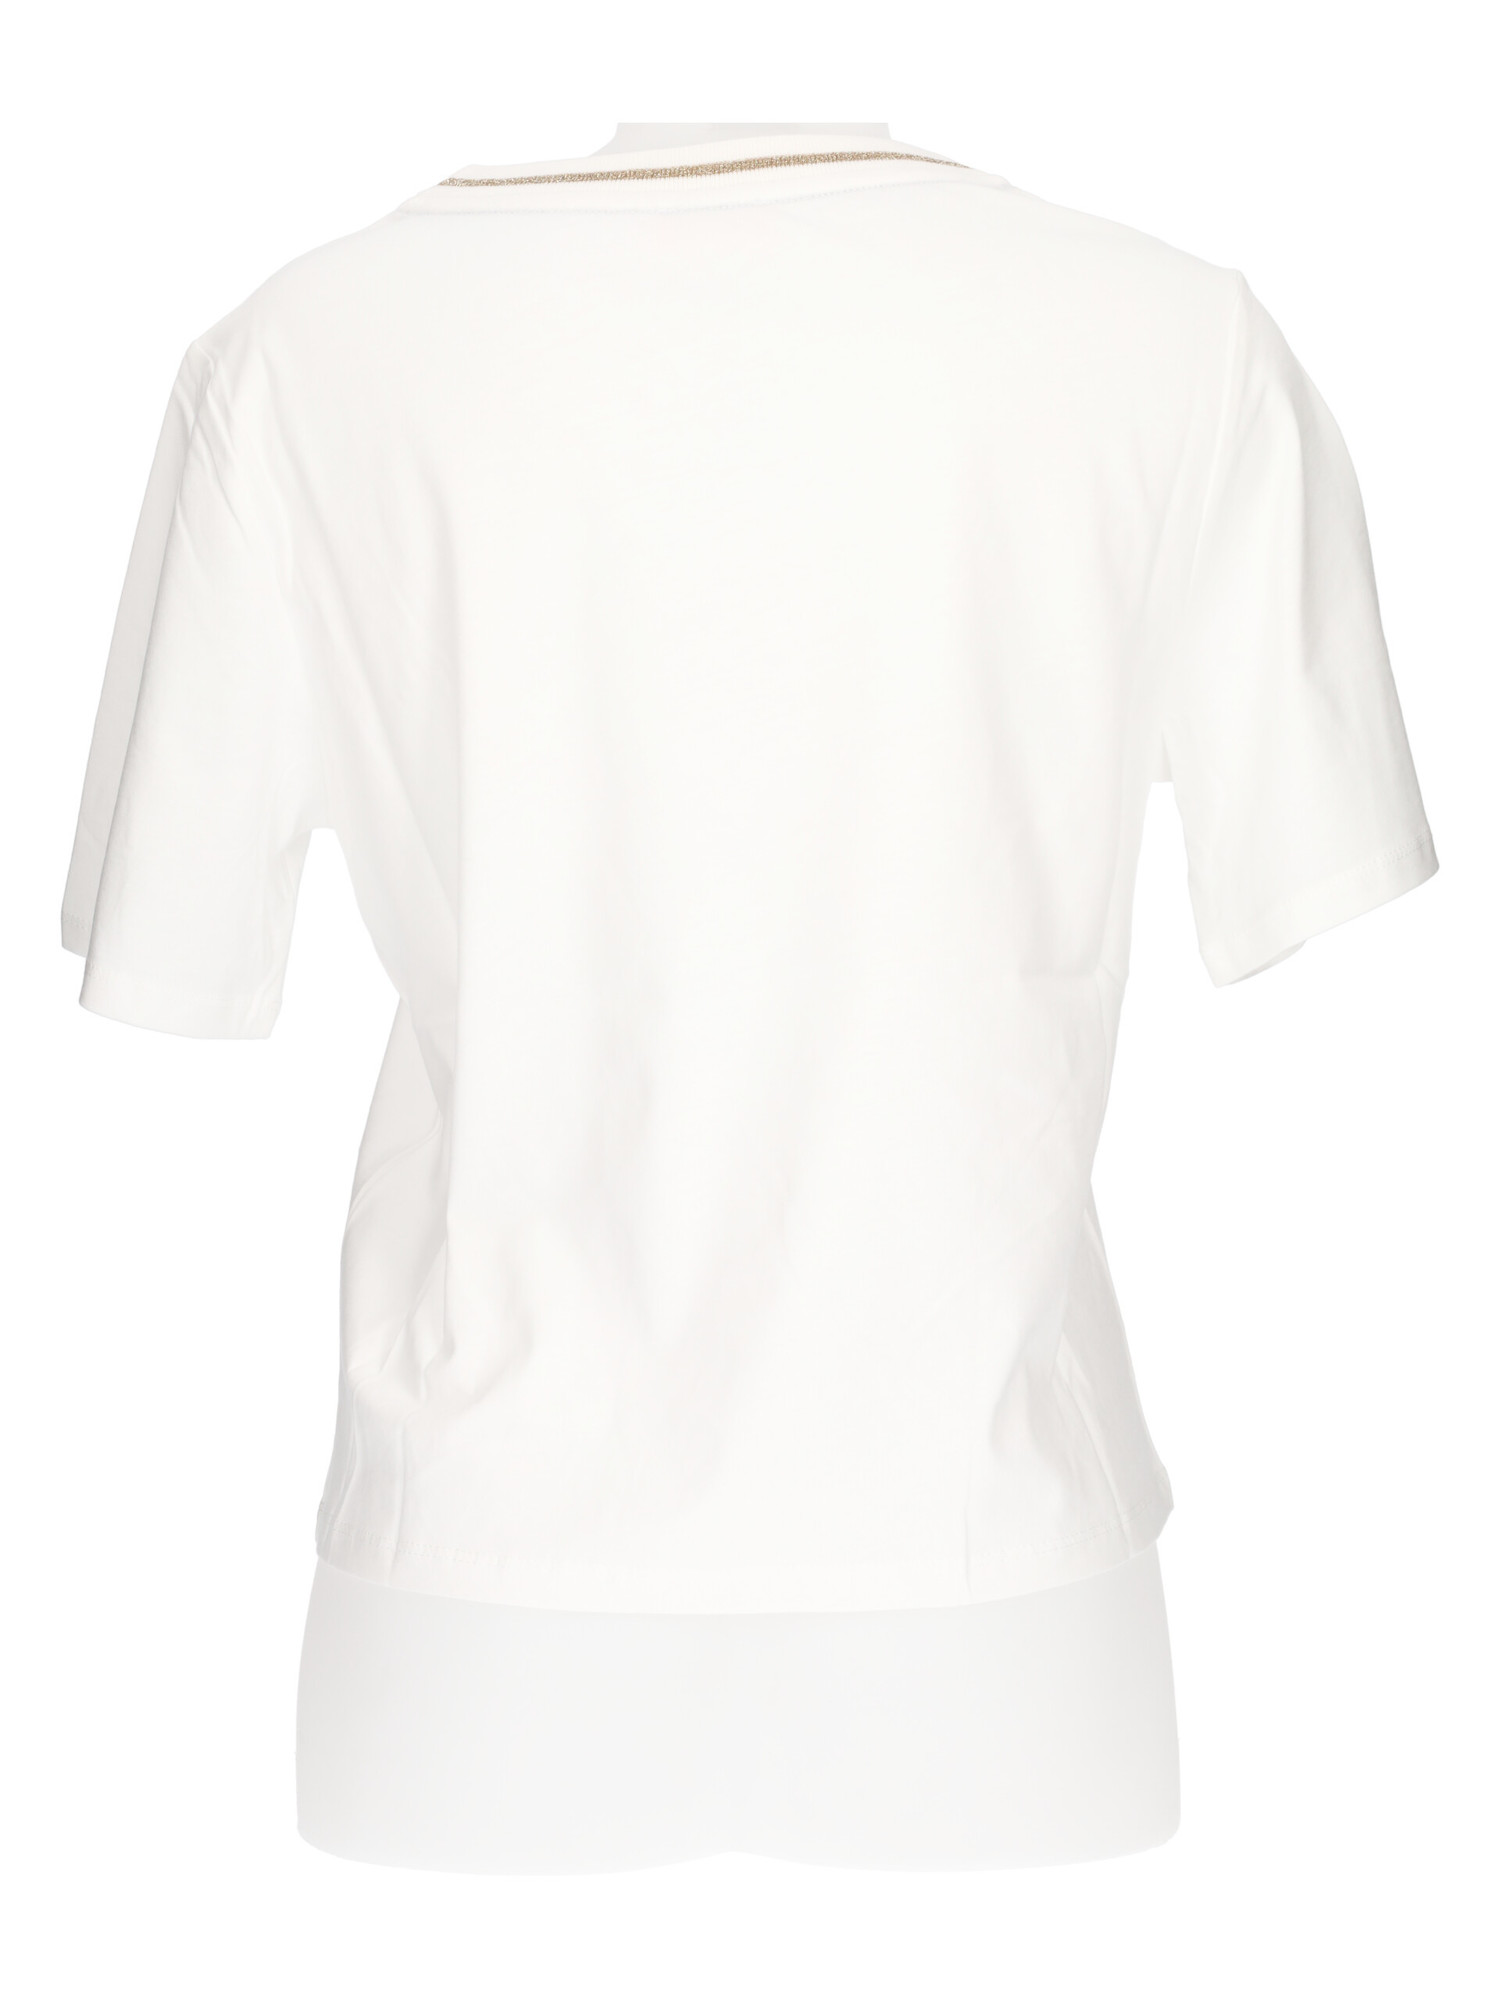 t-shirt-a-maniche-corte-liu-jo-da-donna-bianca-210a63